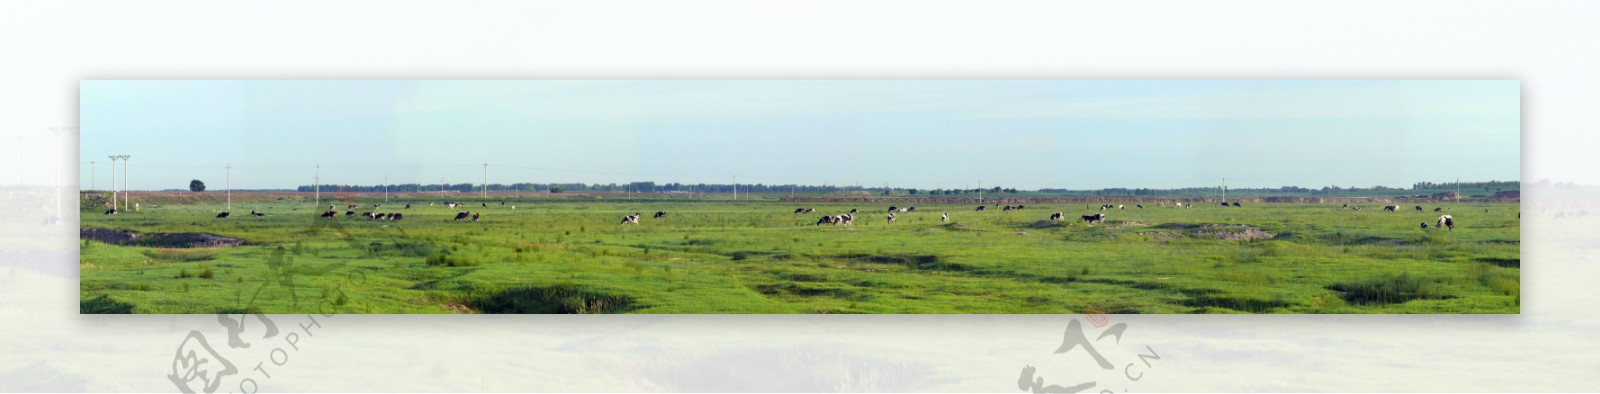 大草原蒙古草原科尔沁大草原长幅草原草原红牛图片